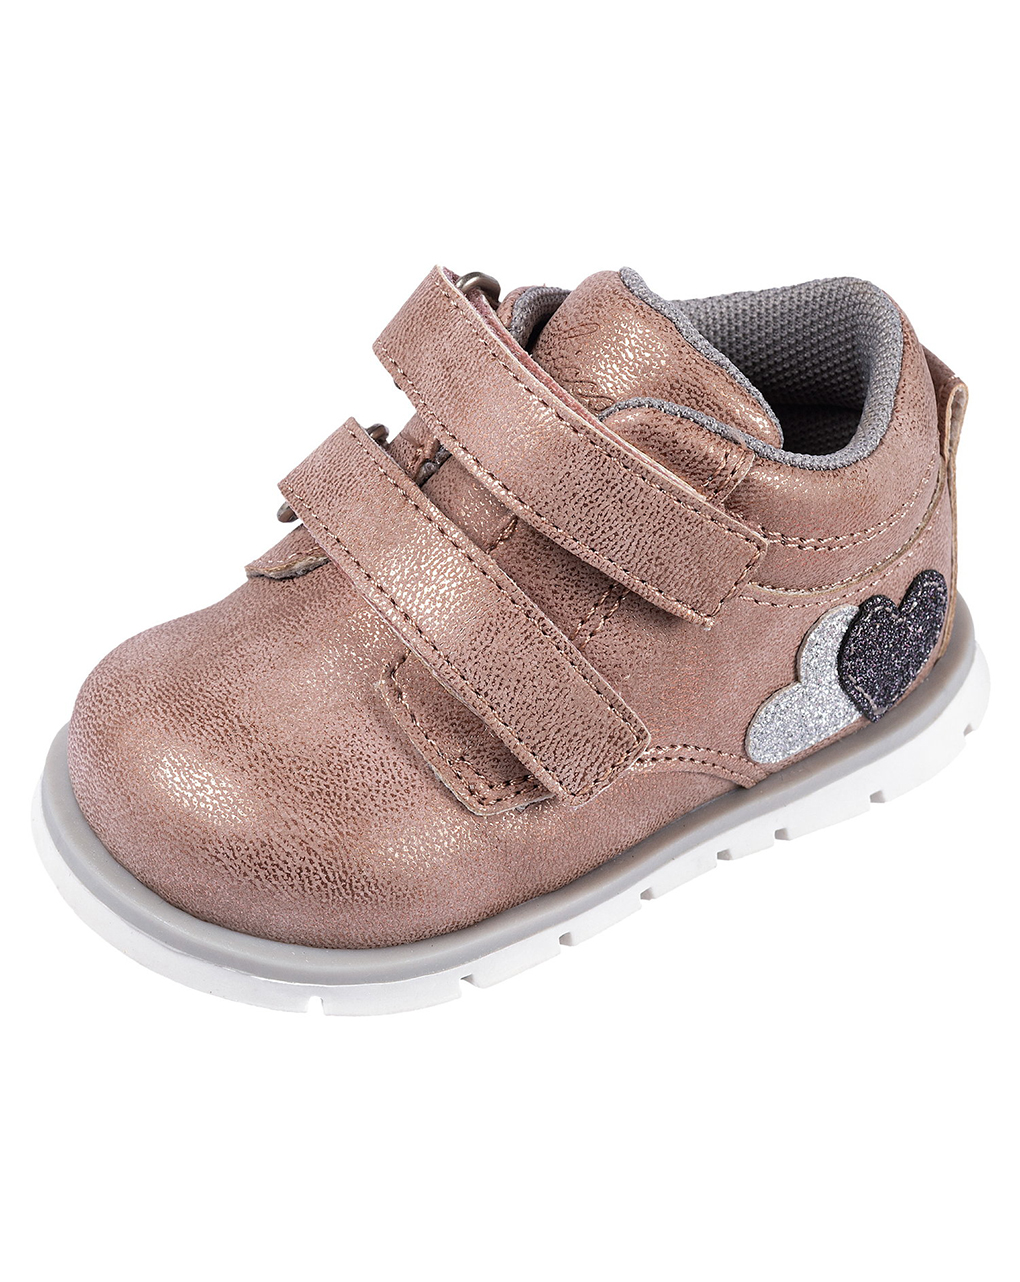 Sapato rosa bebé com brilhantes e velcro chicco forrisa - Chicco